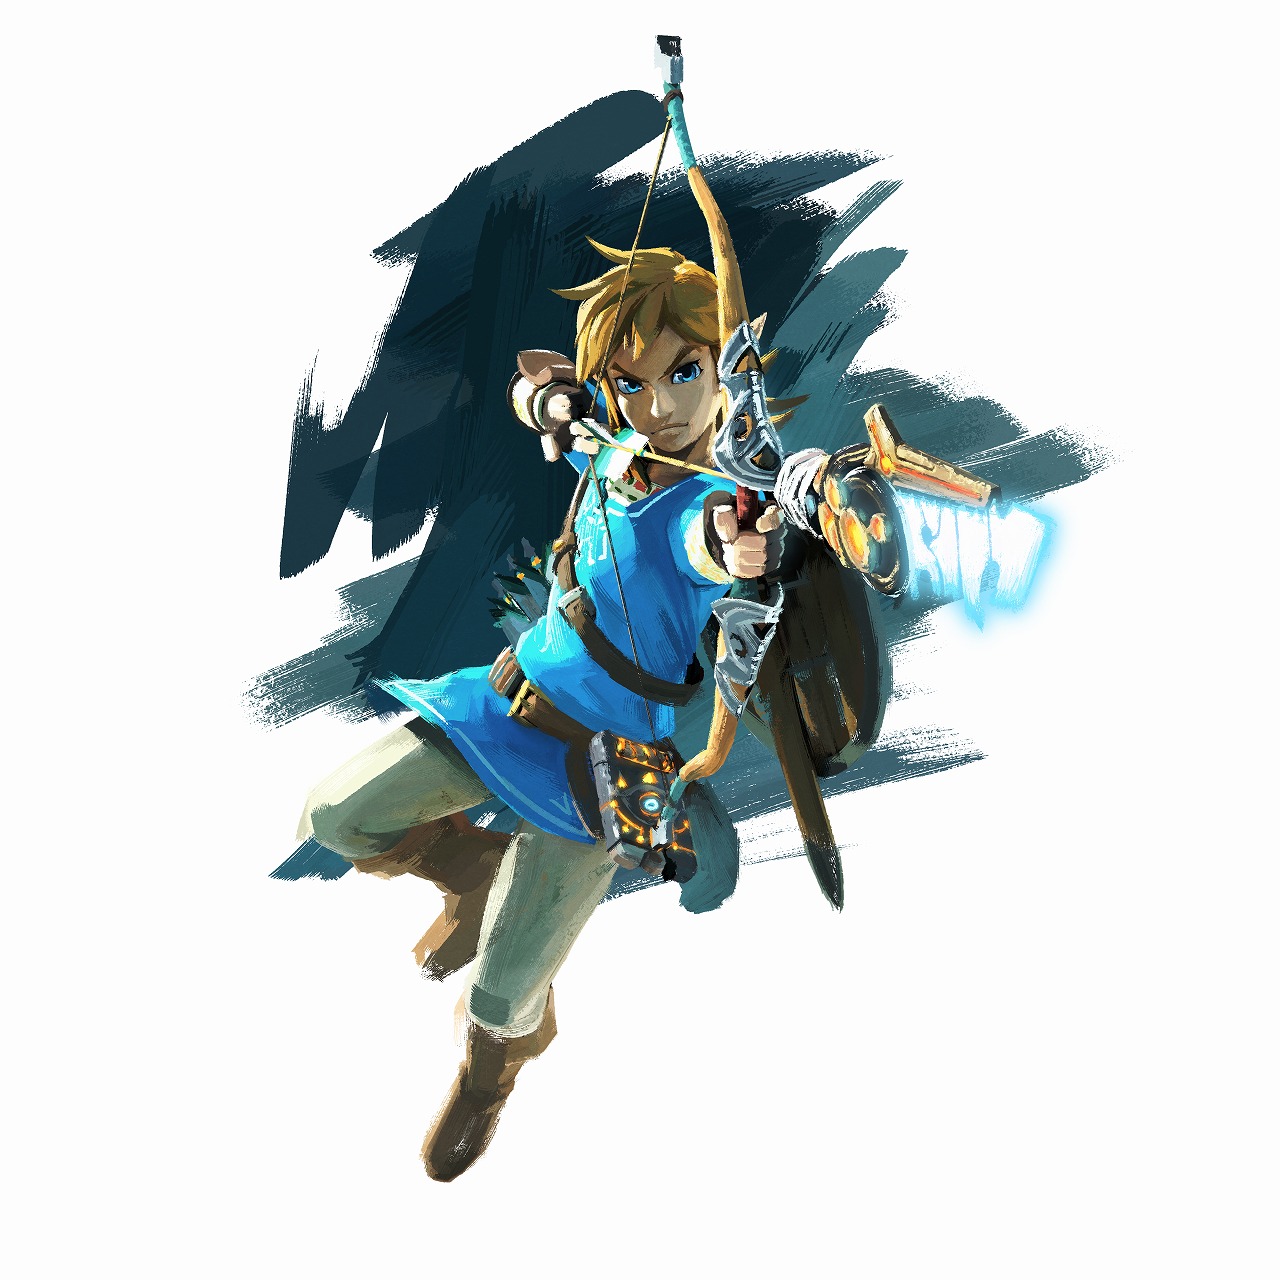 Nová Zelda vypadá opravdu krásně a lákavě 125837